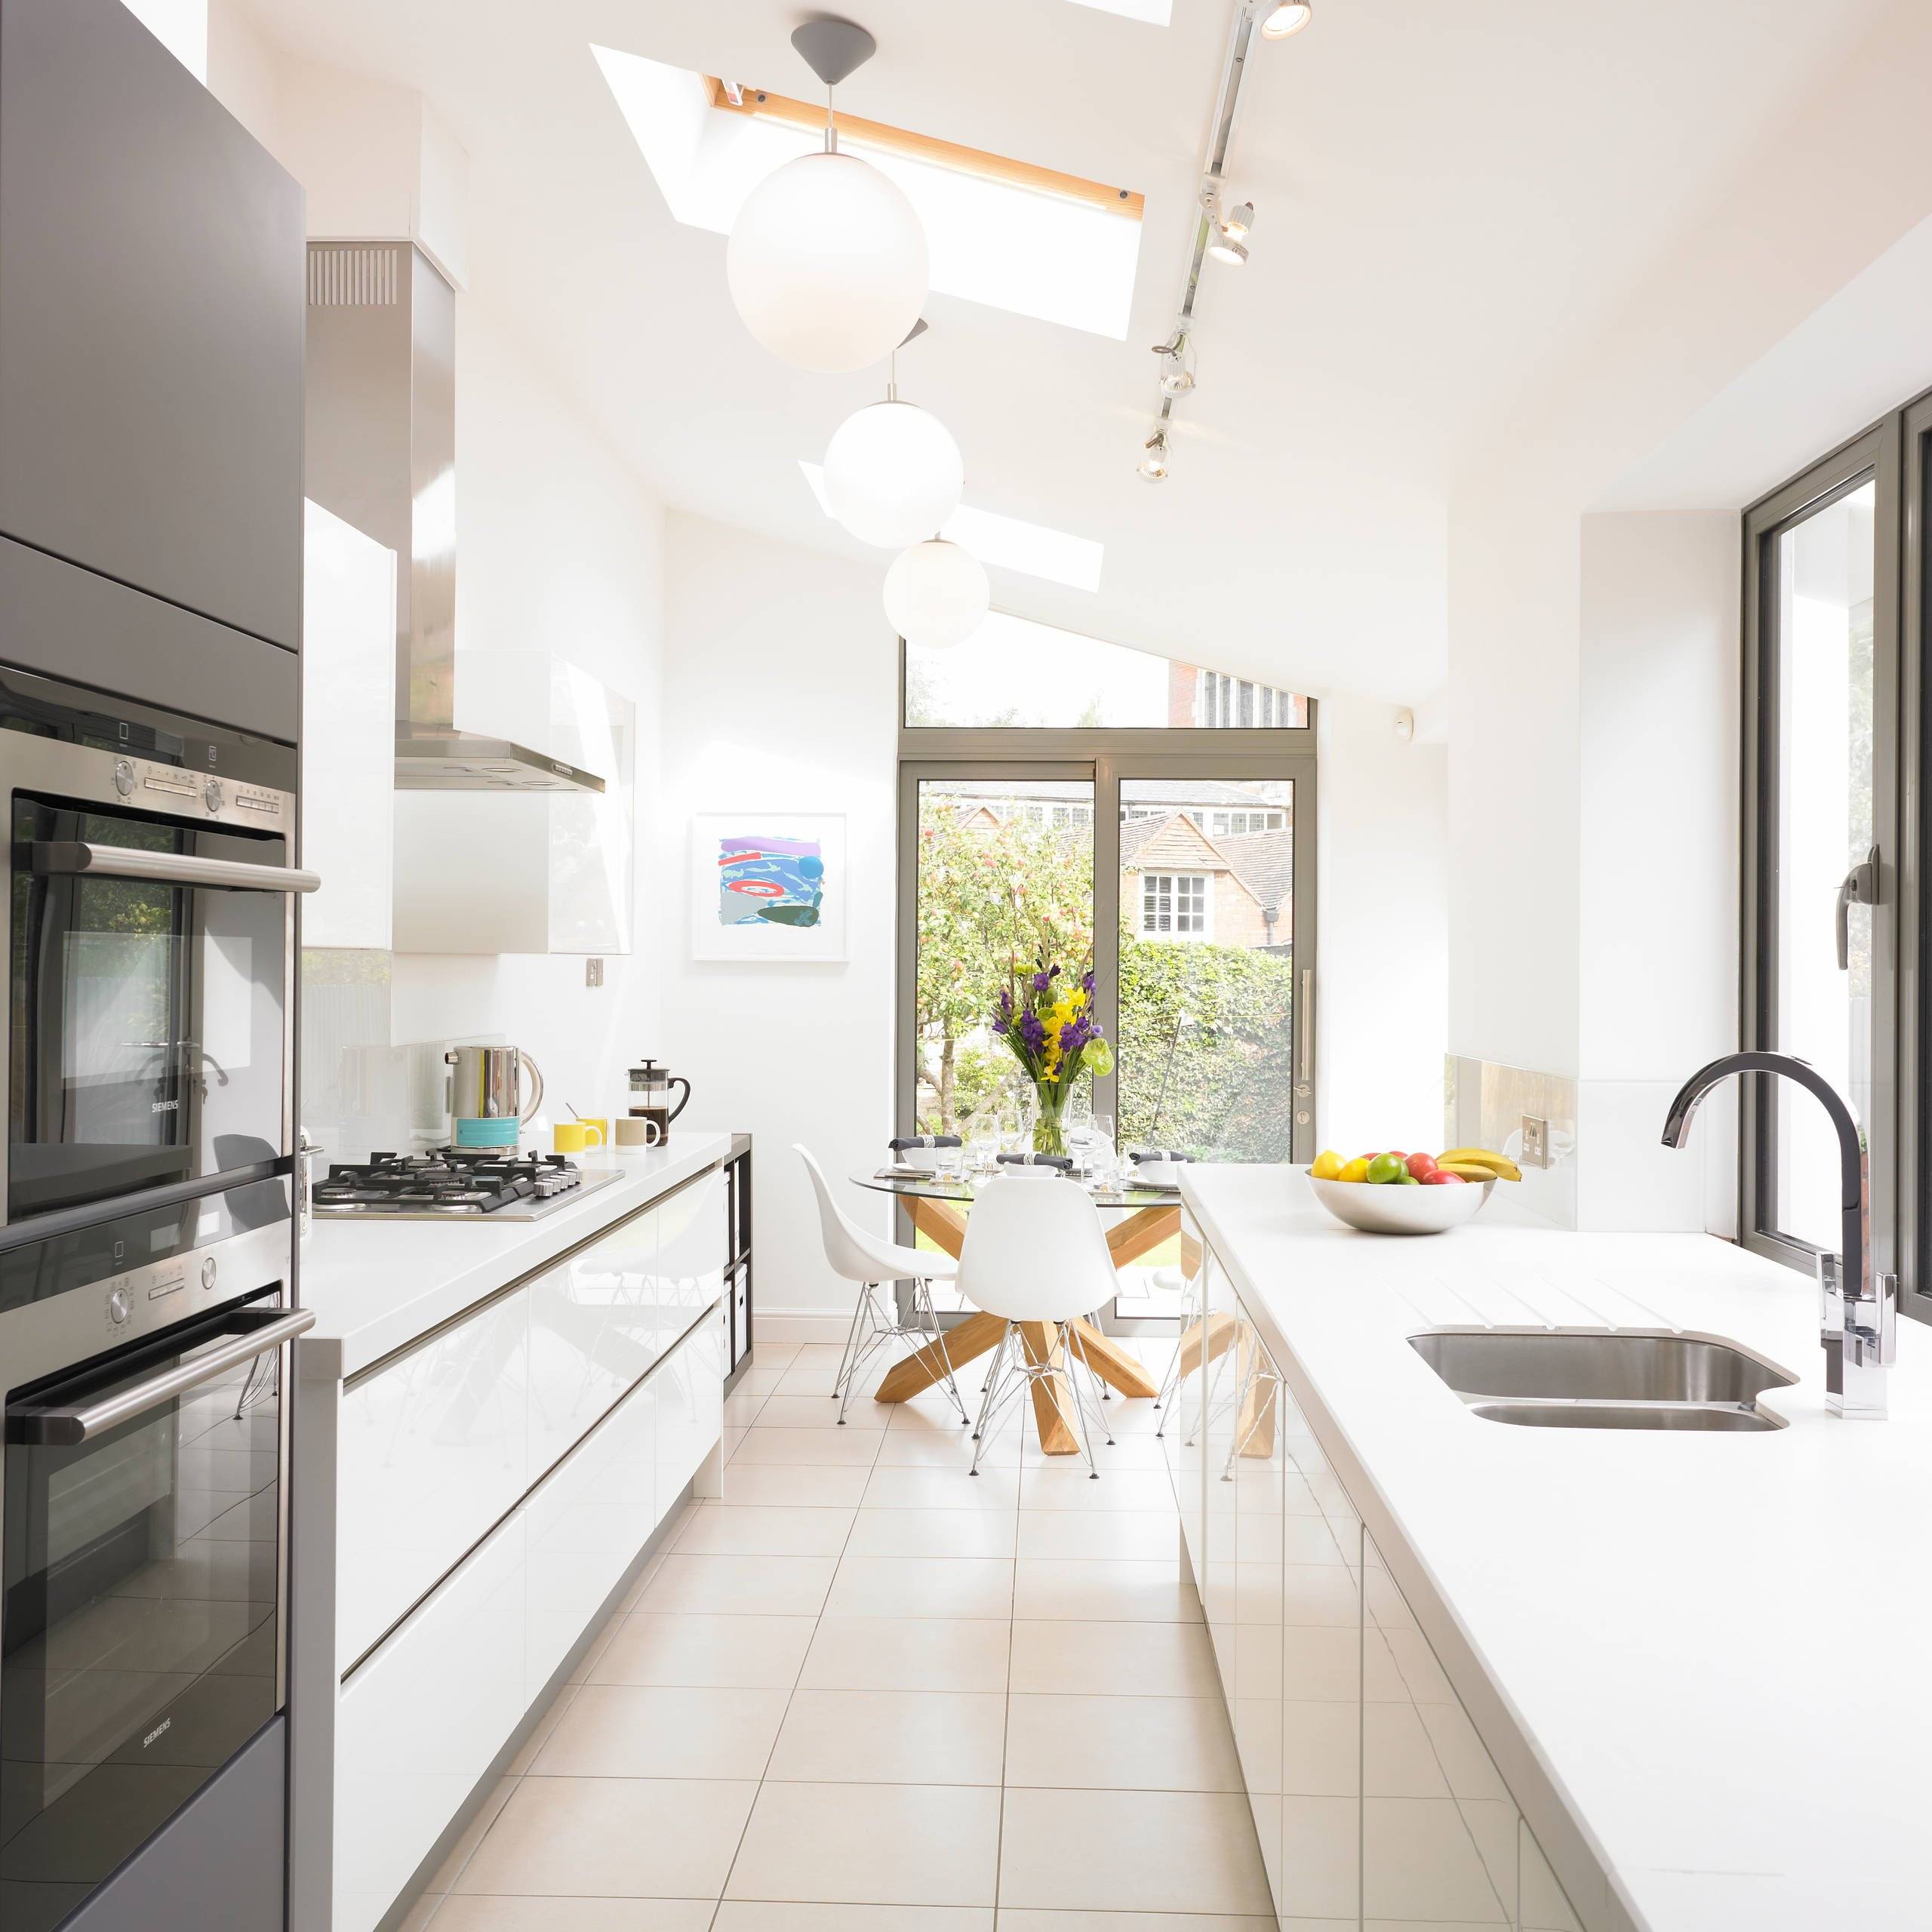 Узкая кухня: фото дизайна, варианты планировки и интерьера вытянутого помещения